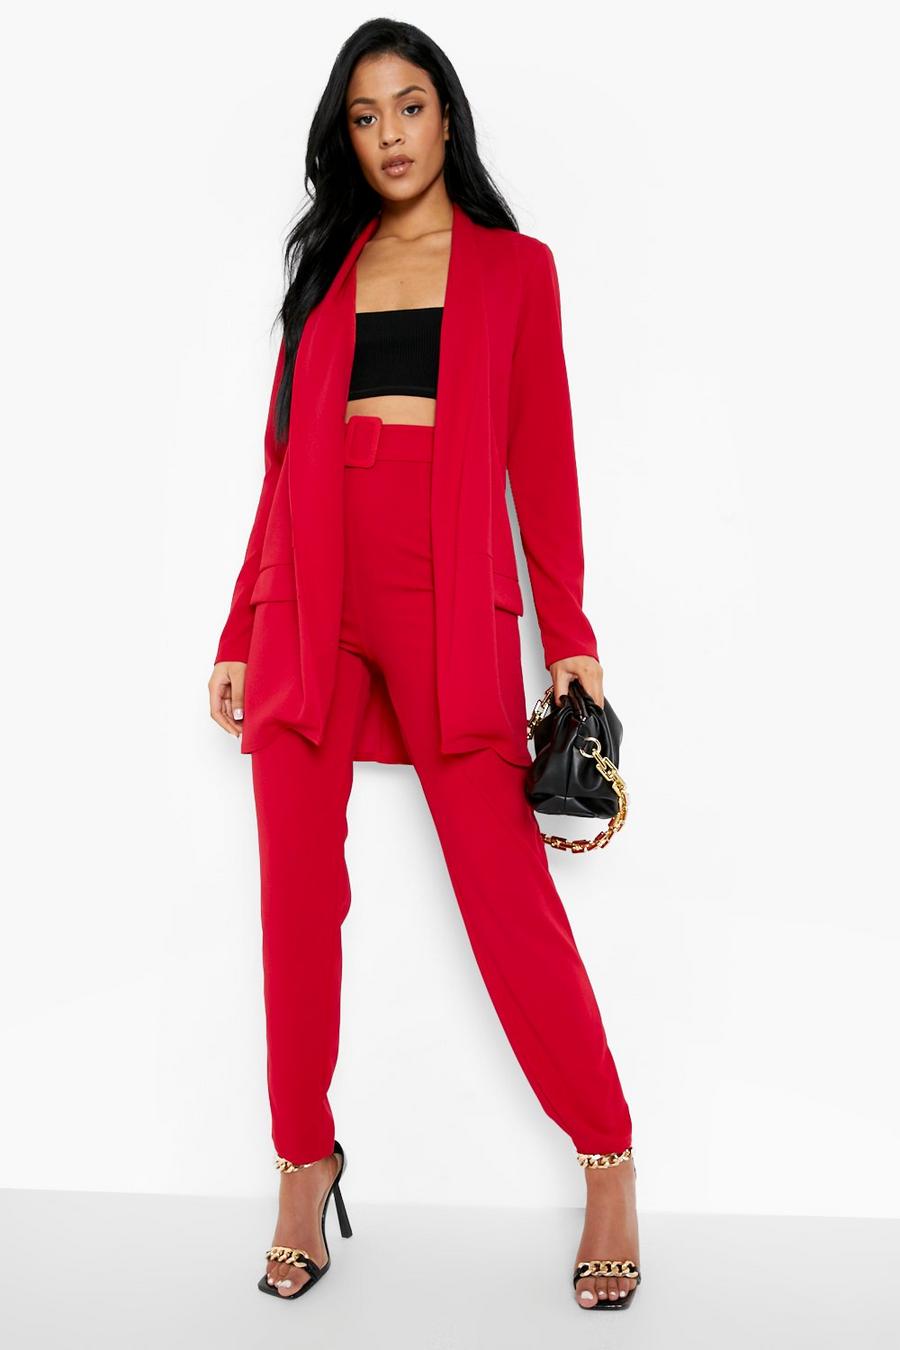 אדום rojo סט מכנסי חליפה עם חגורה ובלייזר, לנשים גבוהות